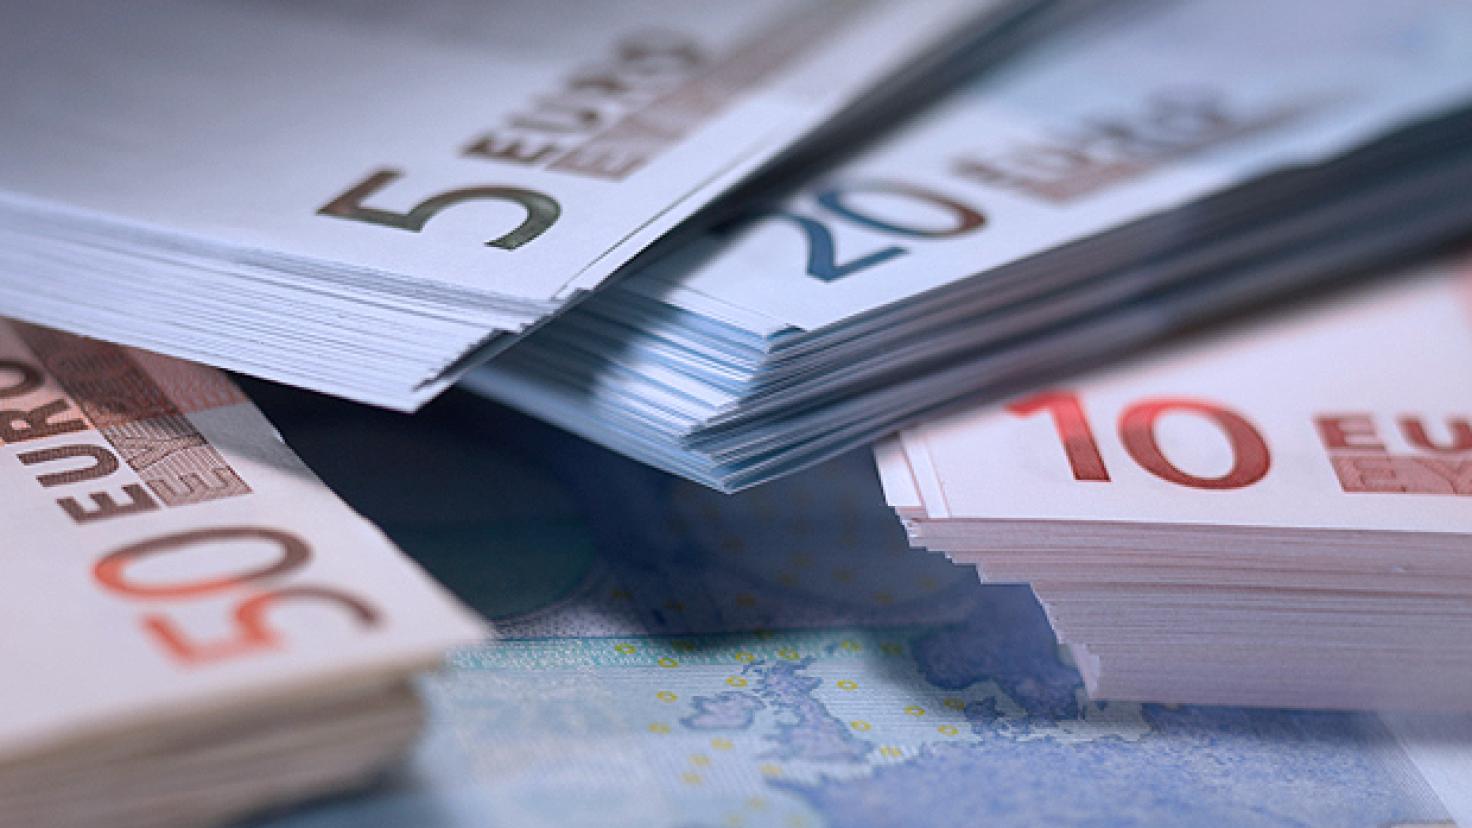 Euró pénznem: 5, 10, 20 és 50 eurós bankjegyek egymásra halmozása [nid:30050]